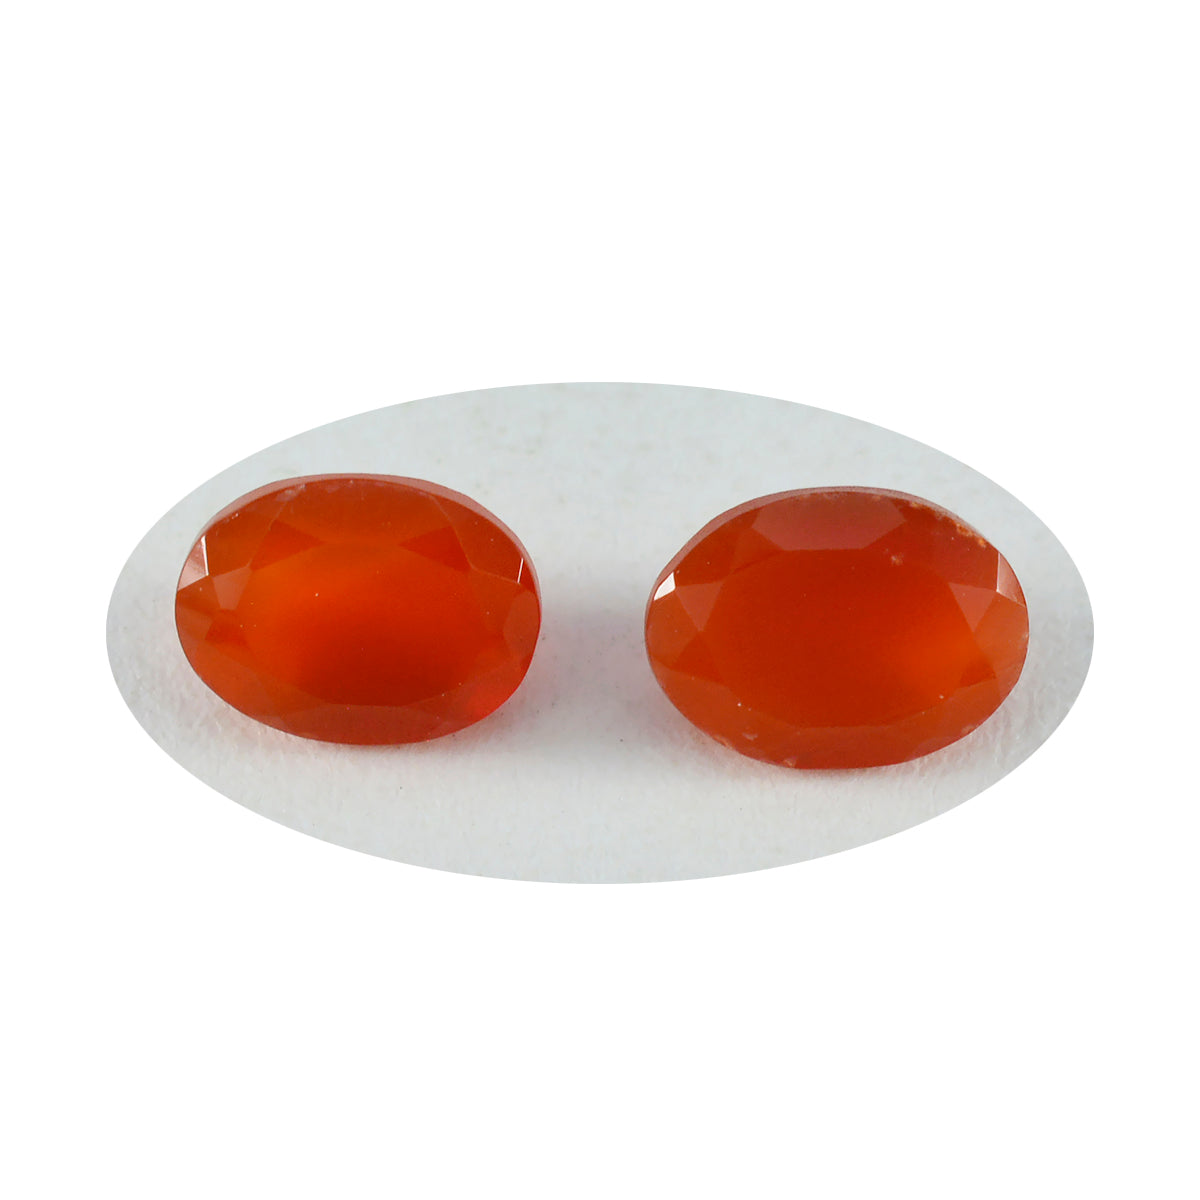 Riyogems 1 pièce d'onyx rouge véritable à facettes 9x11mm de forme ovale, belles pierres précieuses de qualité